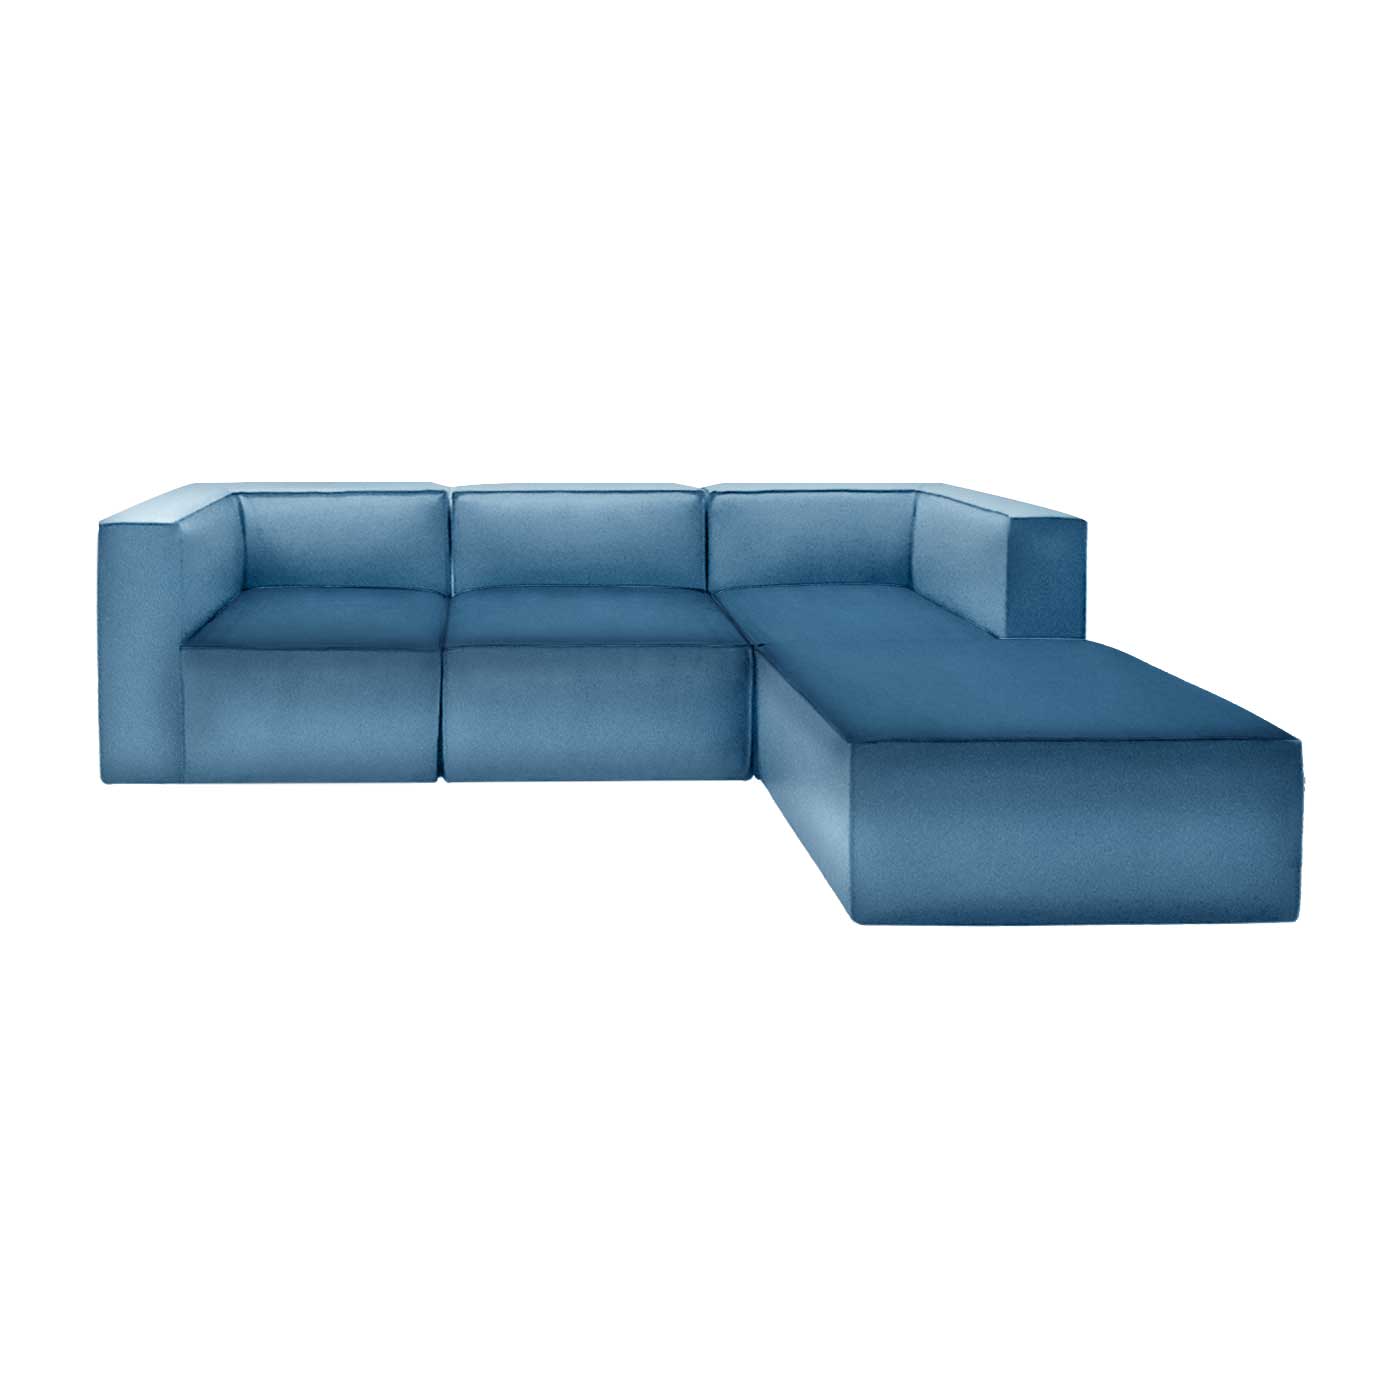 Malmo Light Blue Sofa & Chaise